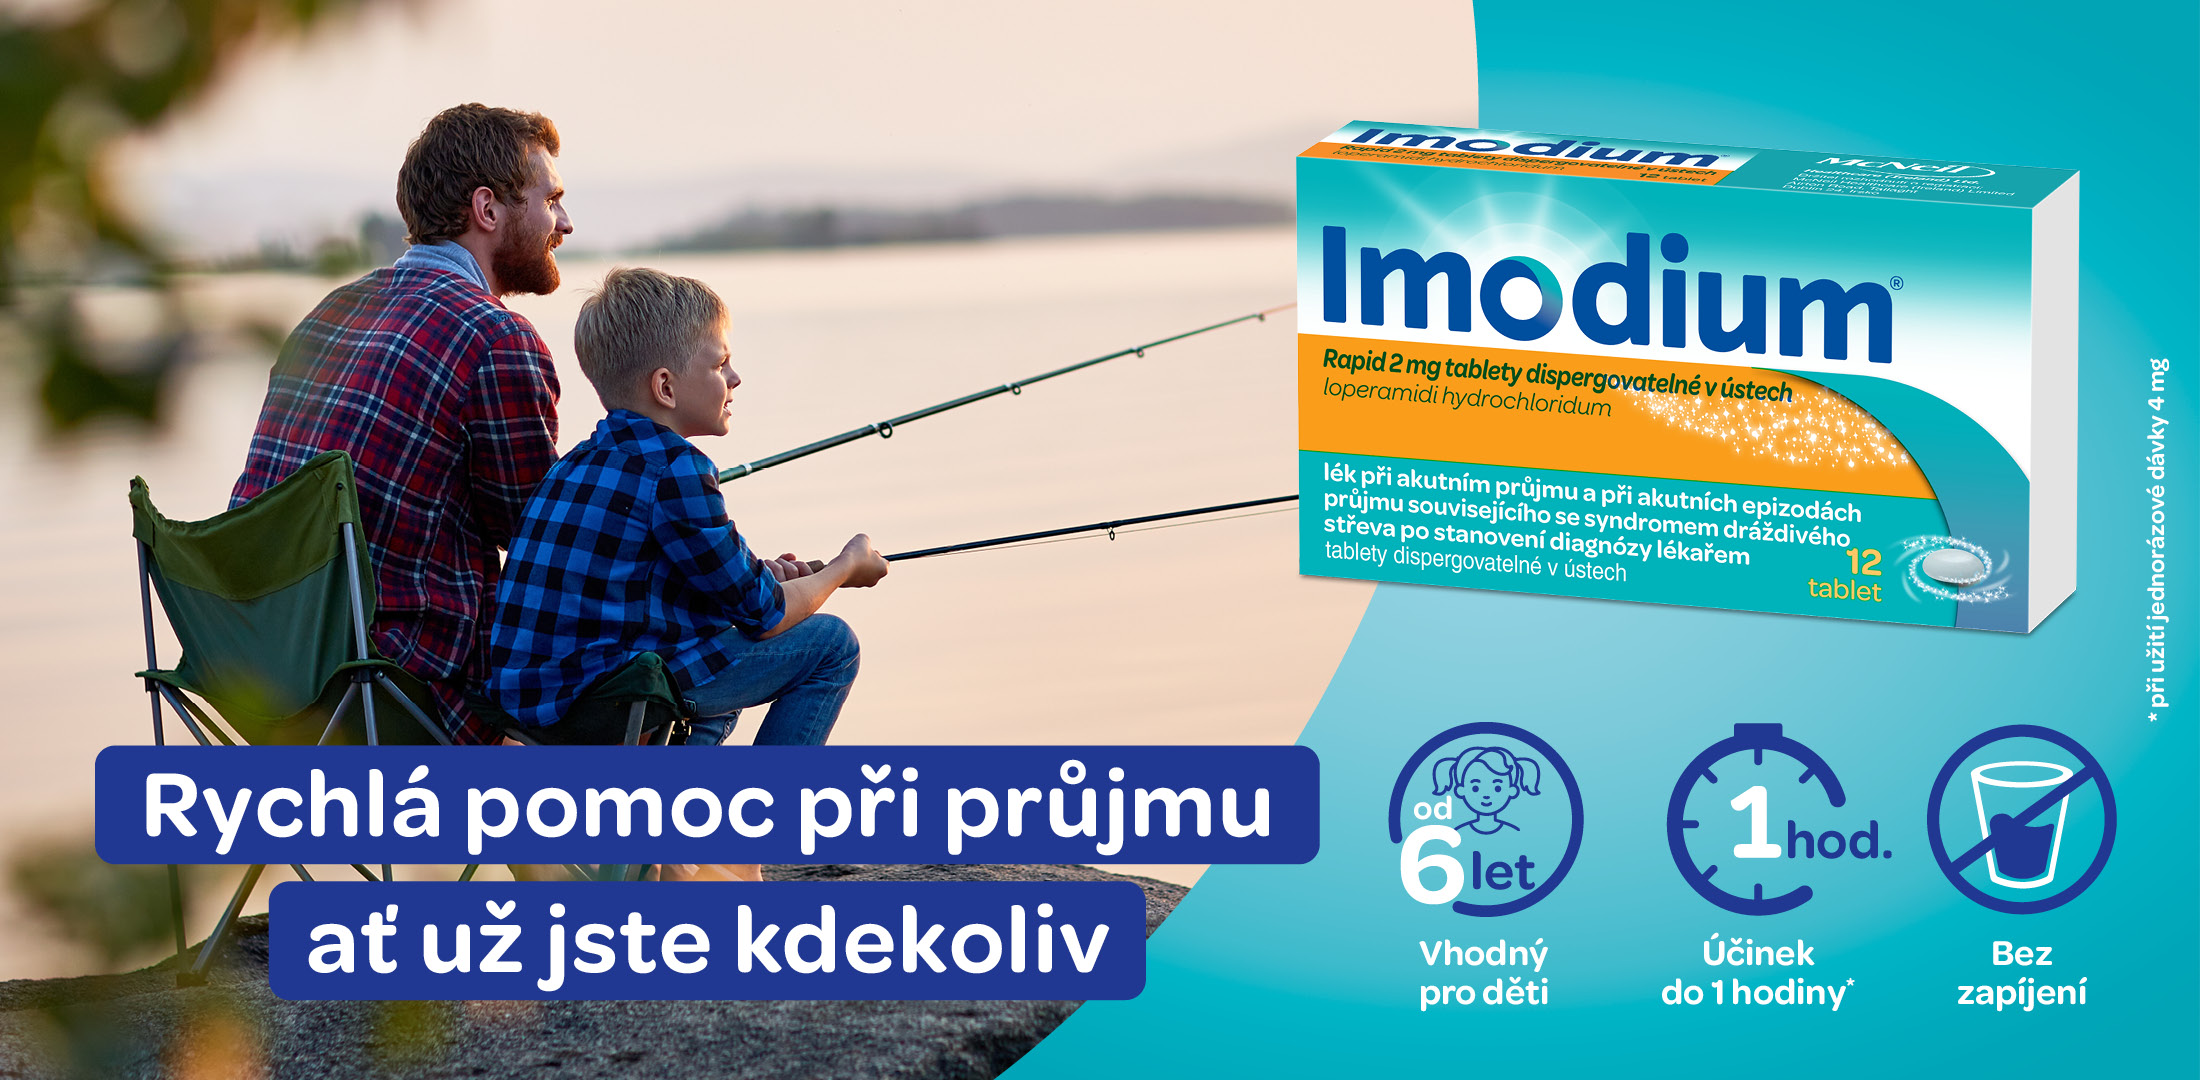 IMODIUM® Rapid 2 mg tablety dispergovatelné v ústech 12 ks - Lékárna.cz